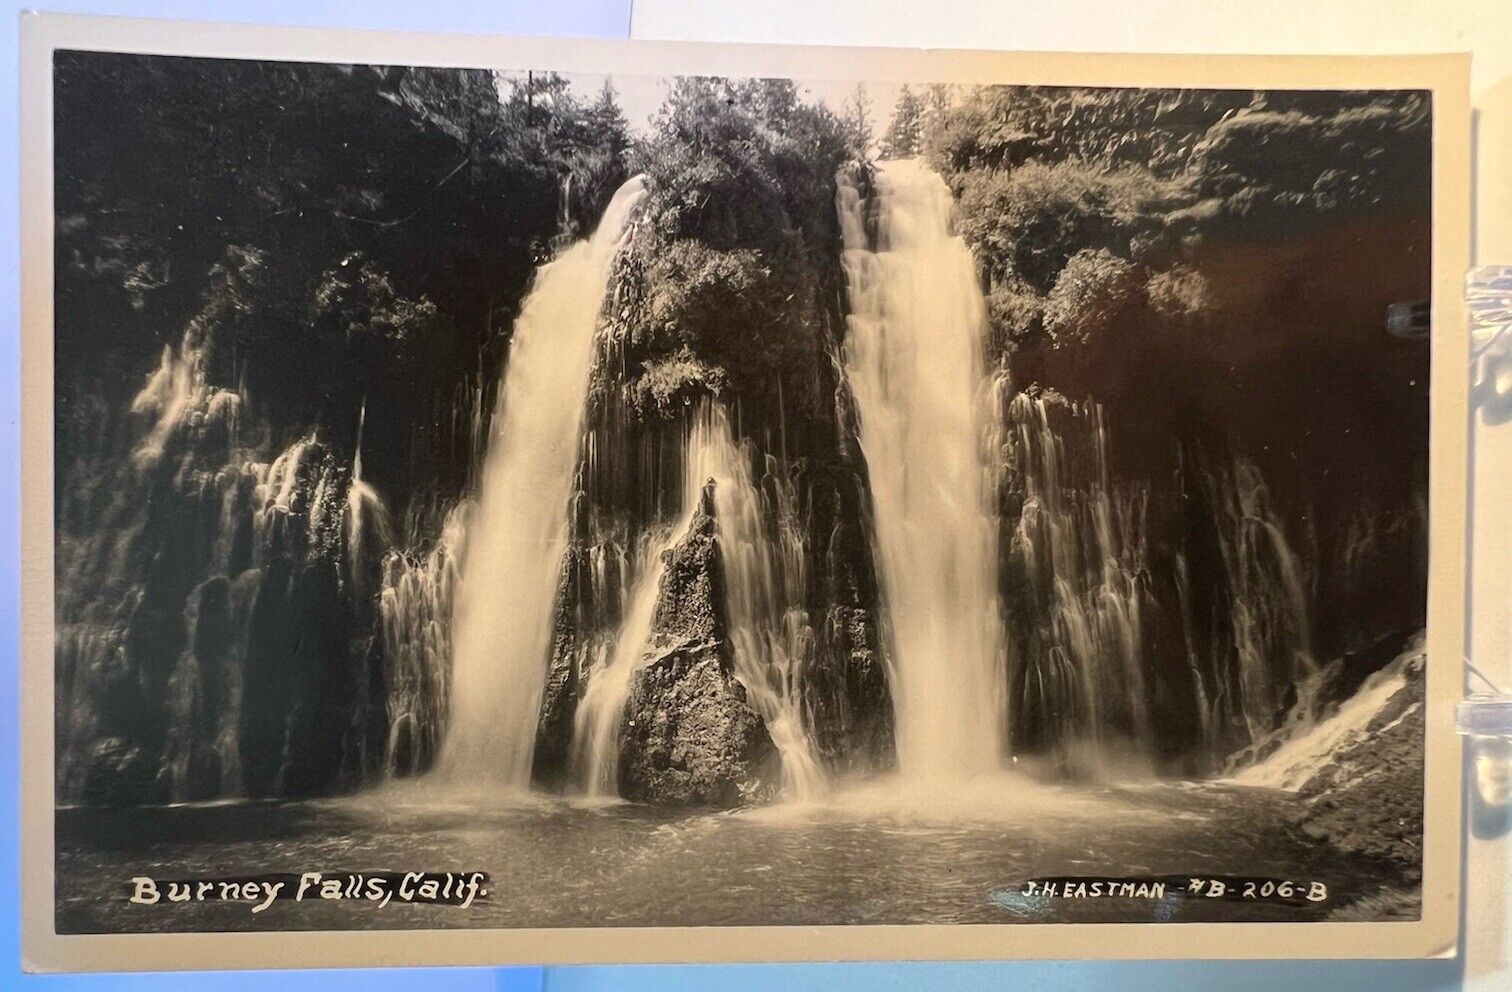 Burney Falls, California CA-Shasta County-c1940s antique RPPC unposted